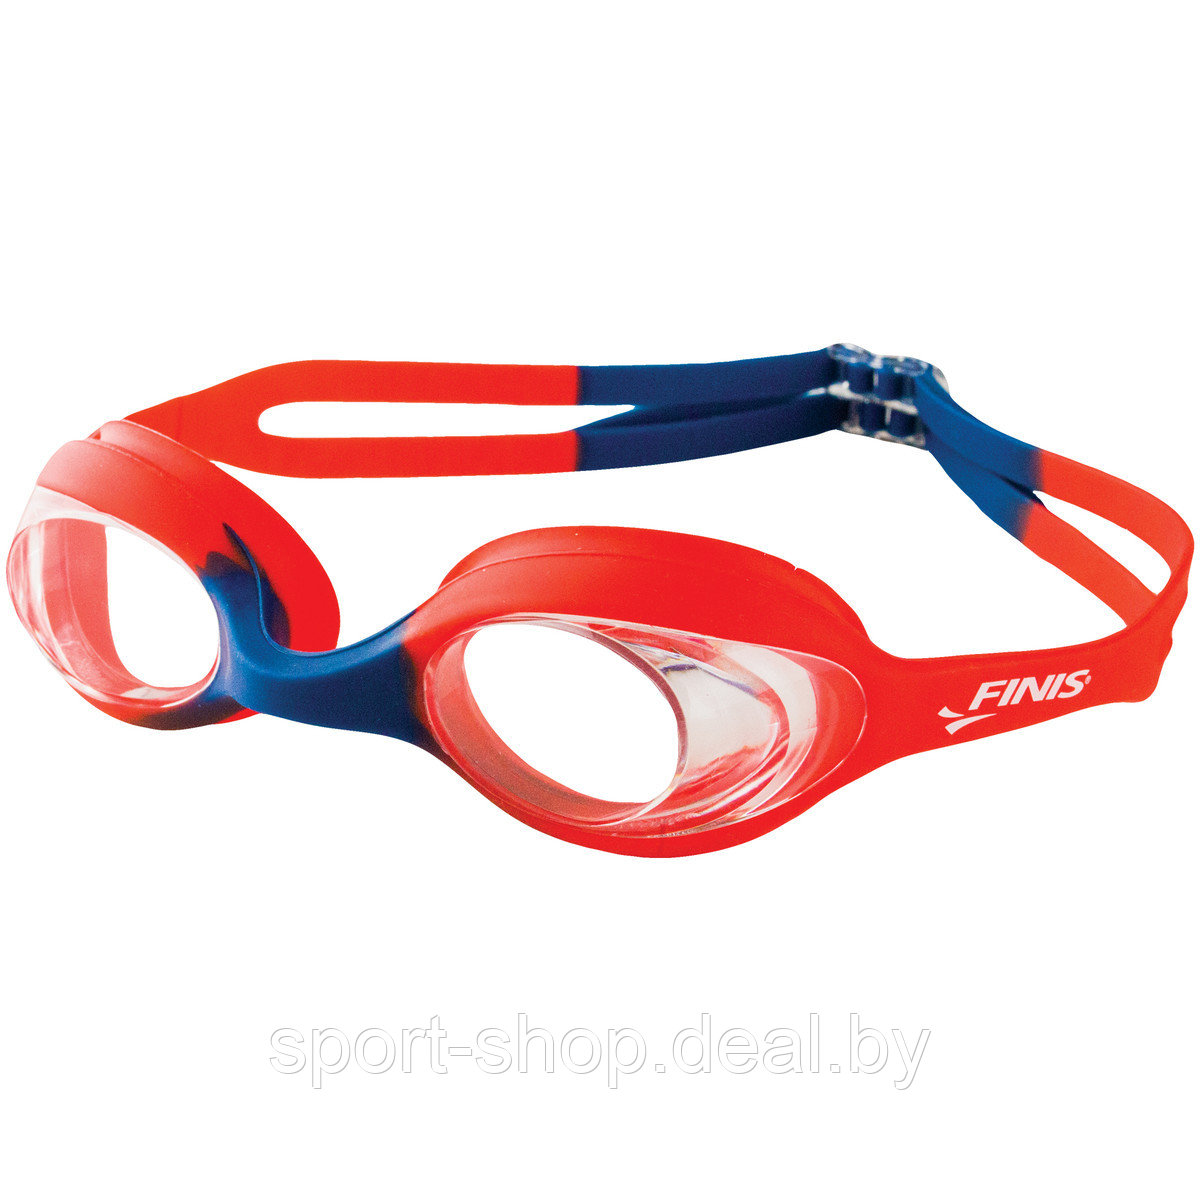 Детские очки для плавания FINIS Red Blue/Clear 3.45.011.133, очки для плавания, очки для плавания в бассейне